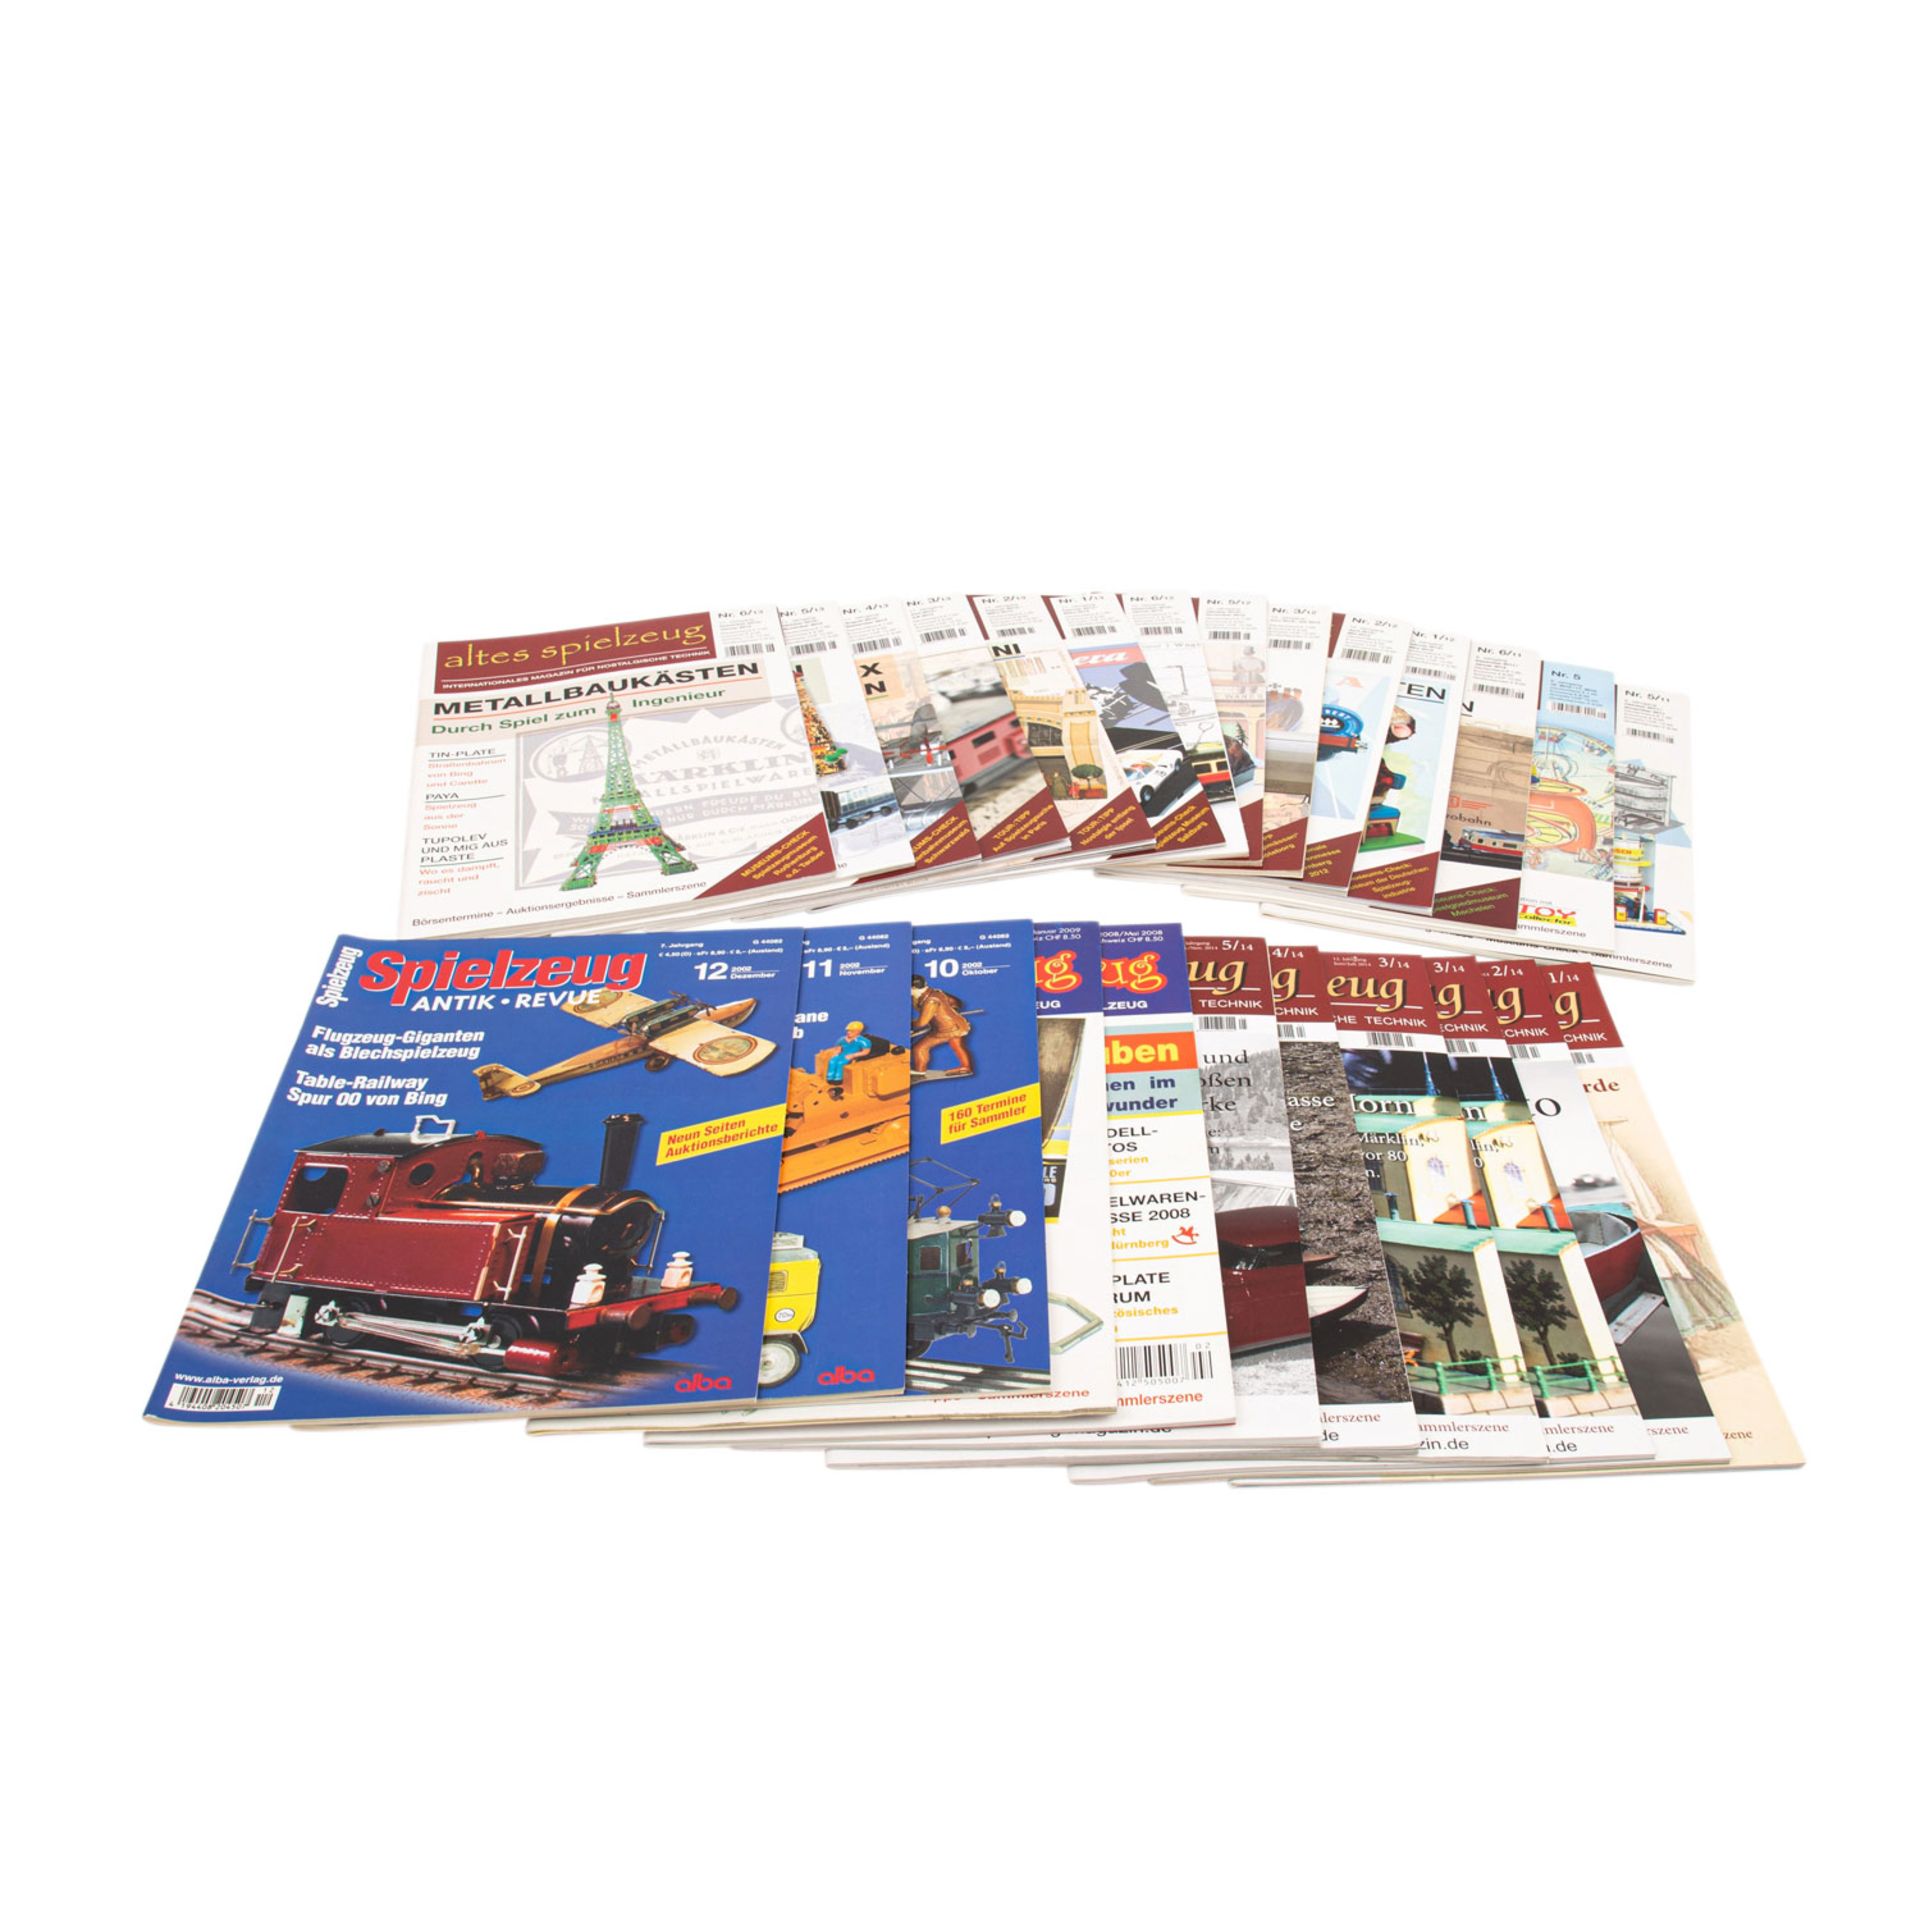 WIKING umfangreiches Konvolut Hefte und Kataloge für Wiking-Sammler, 2000er Jahre,bes - Bild 3 aus 4